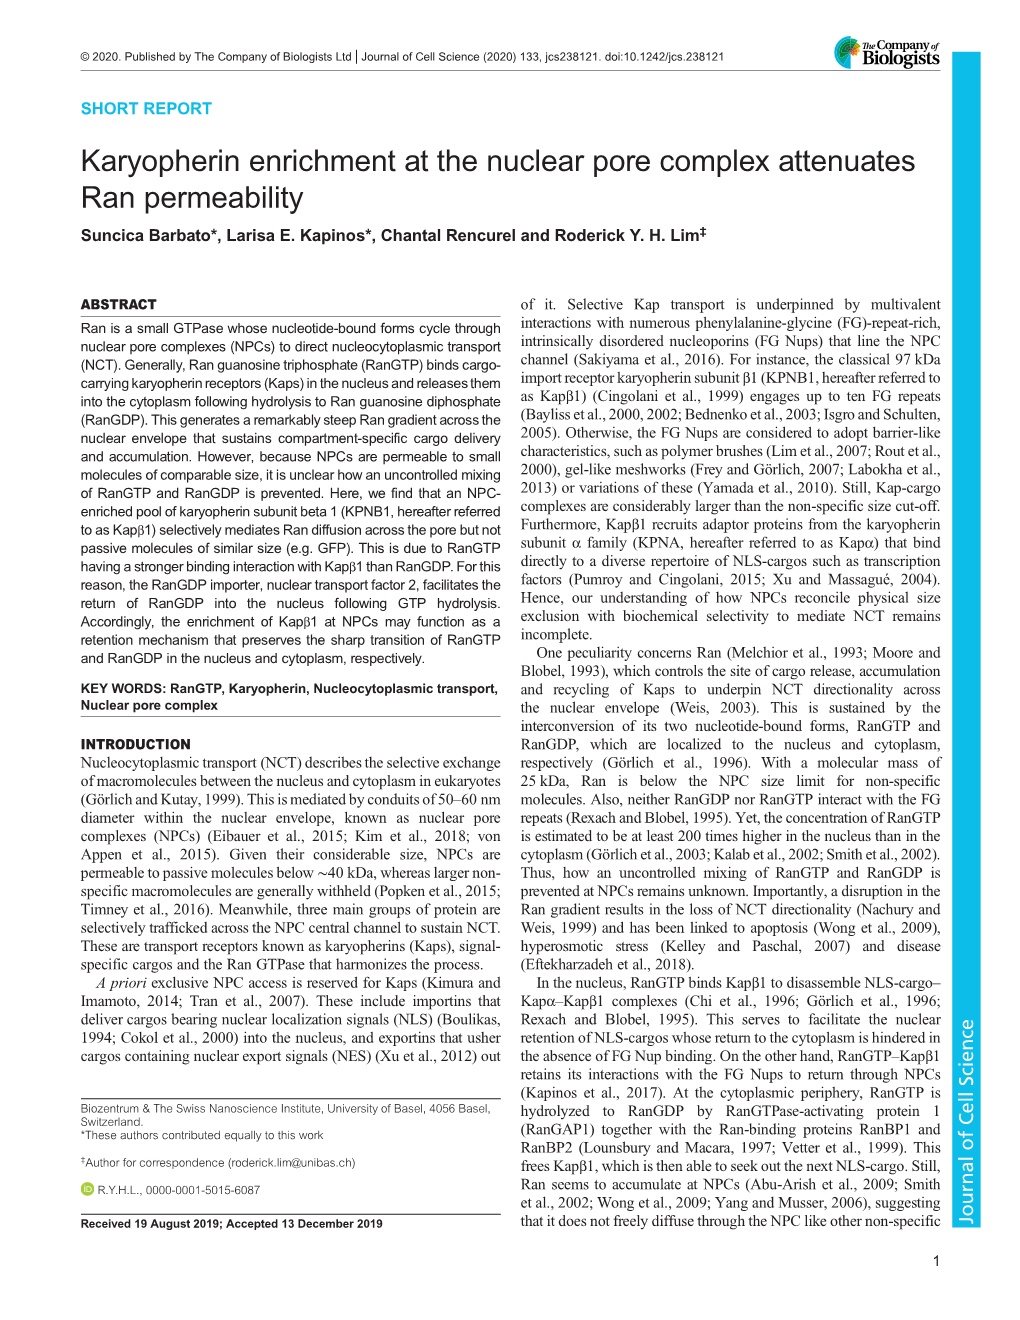 Karyopherin Enrichment at the Nuclear Pore Complex Attenuates Ran Permeability Suncica Barbato*, Larisa E